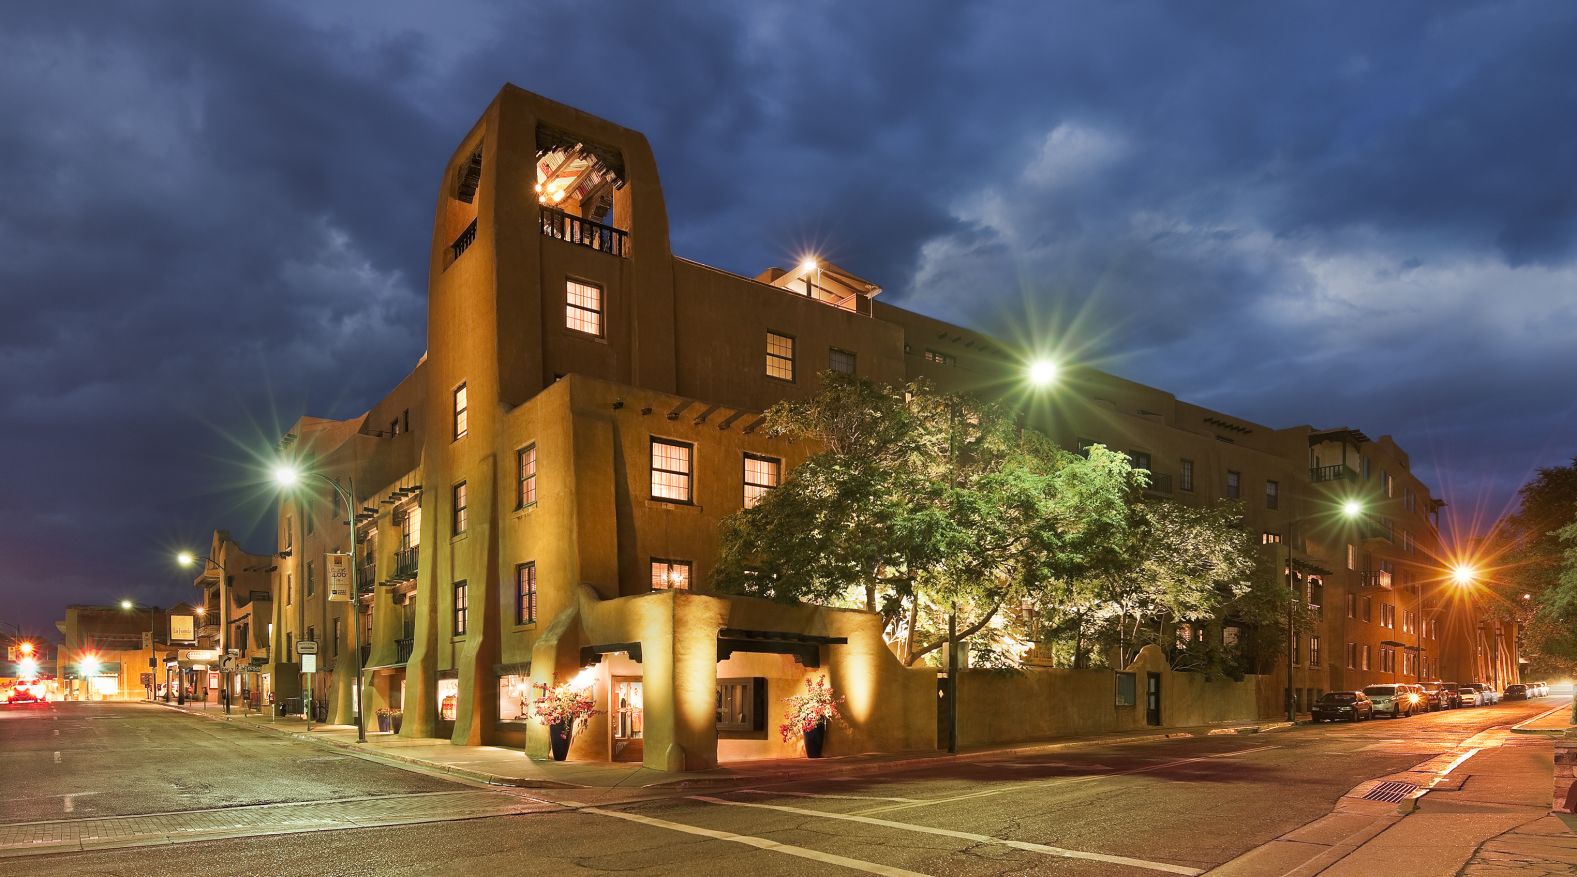 La Fonda hotel is located on the Santa Fe plaza